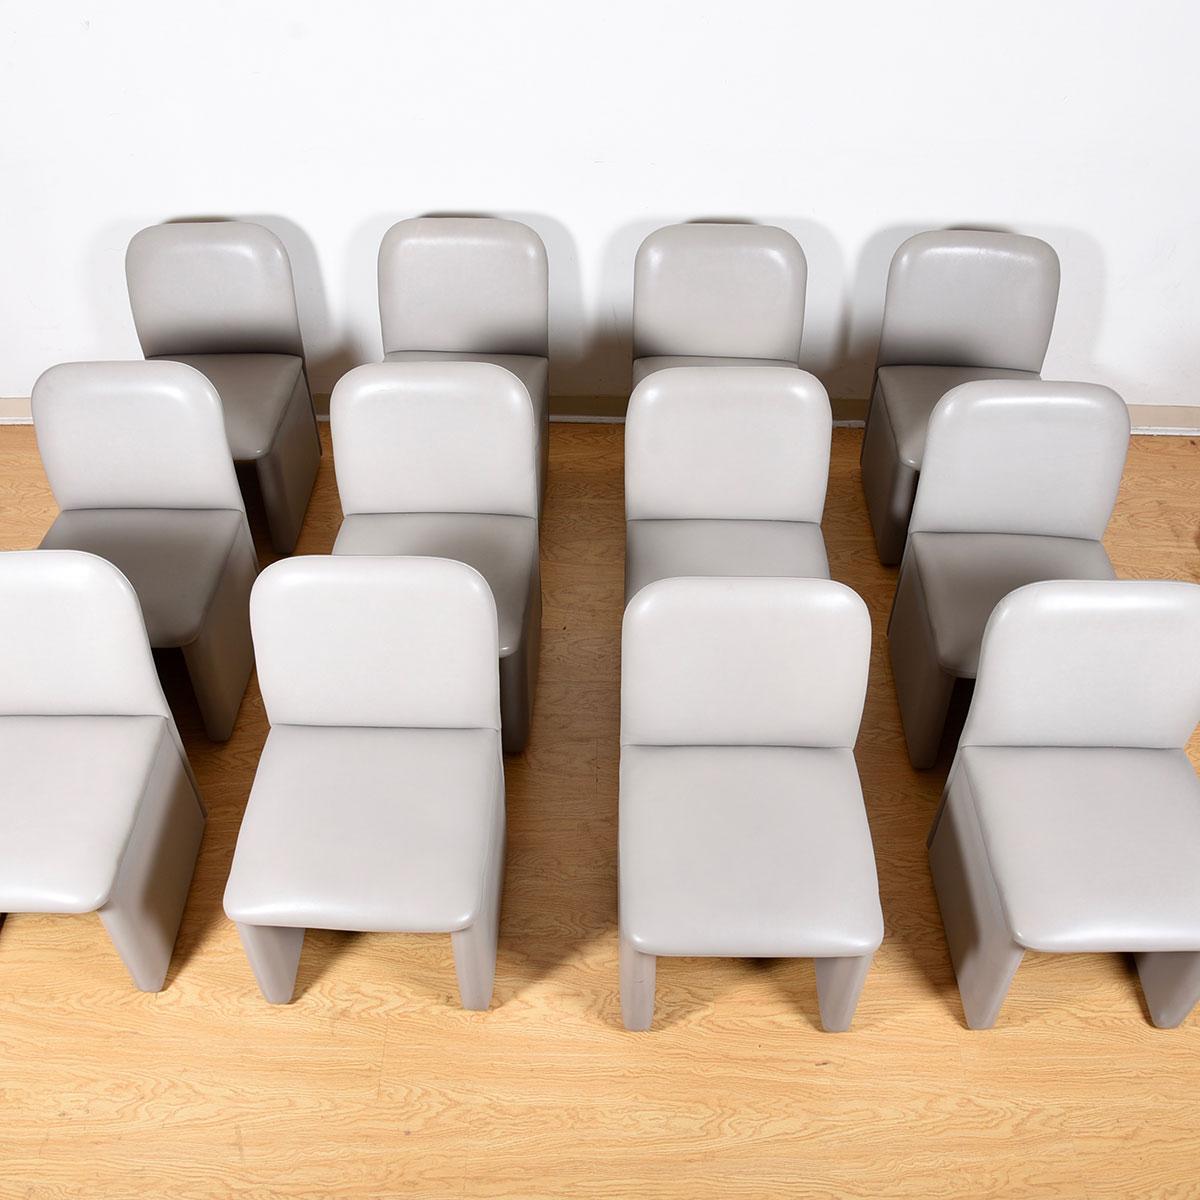 Ensemble de 12 chaises de salle à manger / de conférence contemporaines entièrement rembourrées en cuir gris perle

Informations complémentaires :
MATERIAL : Rembourrage, cuir
Acheté à une grande agence de publicité pour être utilisé dans l'une